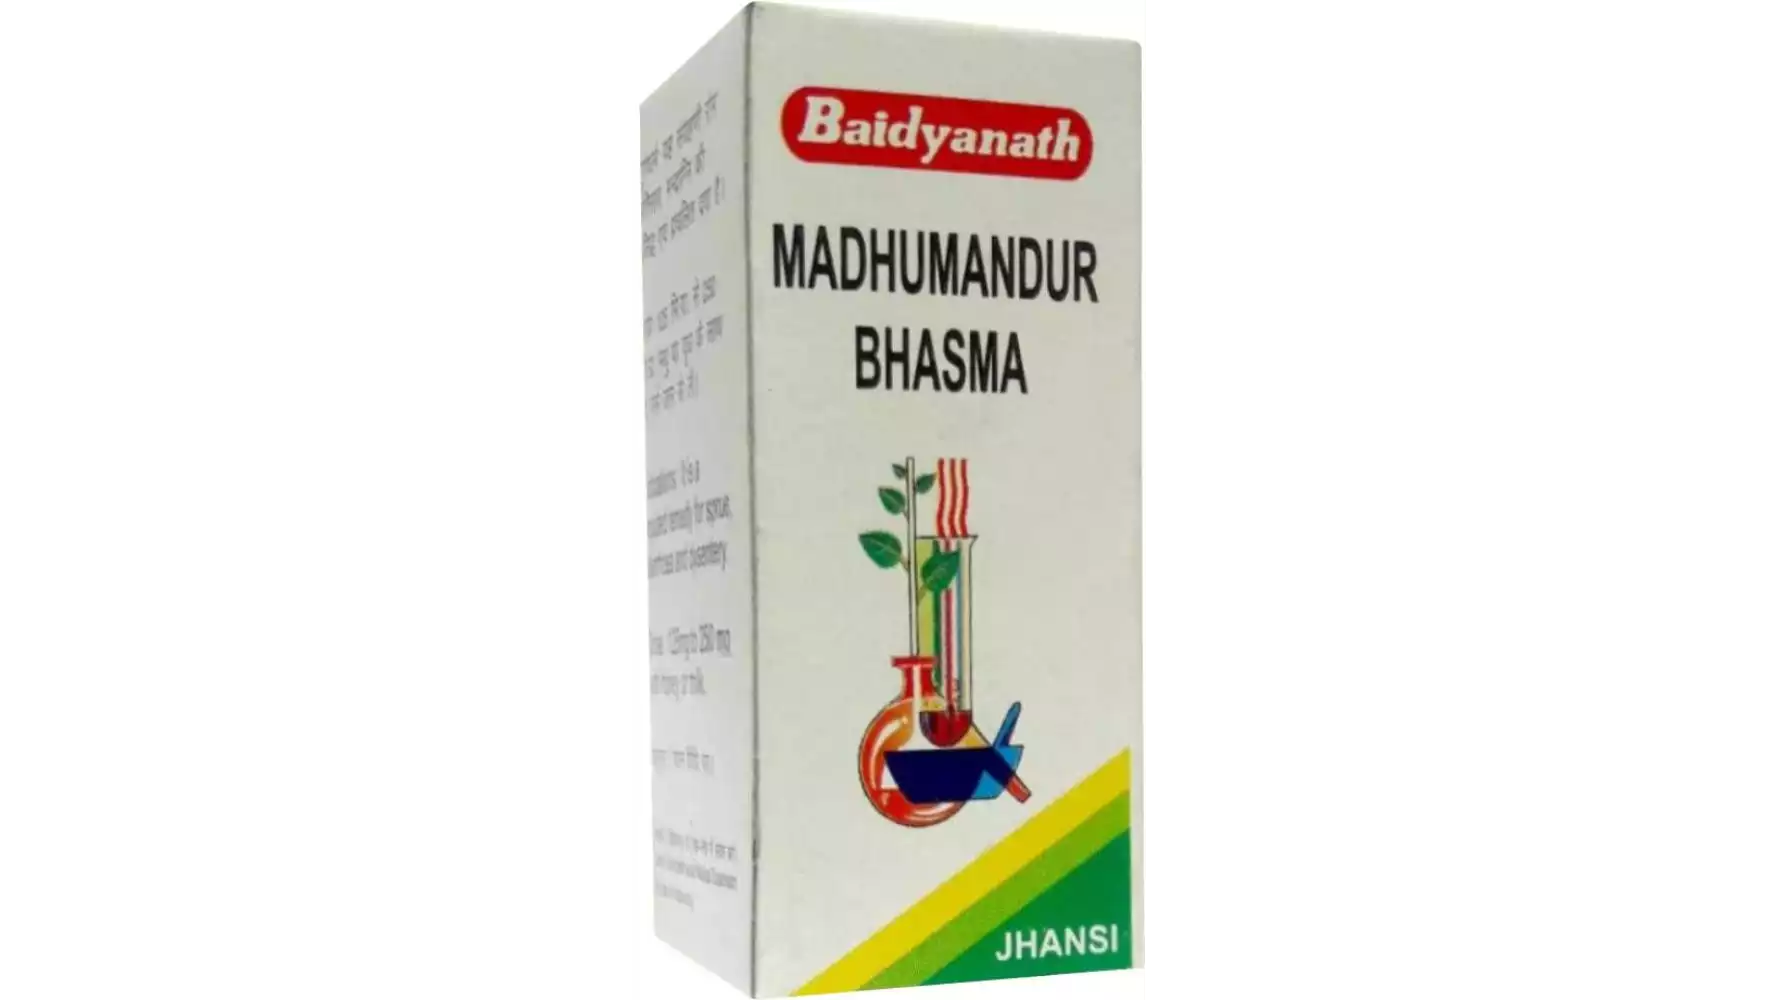 Baidyanath Madhu Mandur Bhasm (5g)